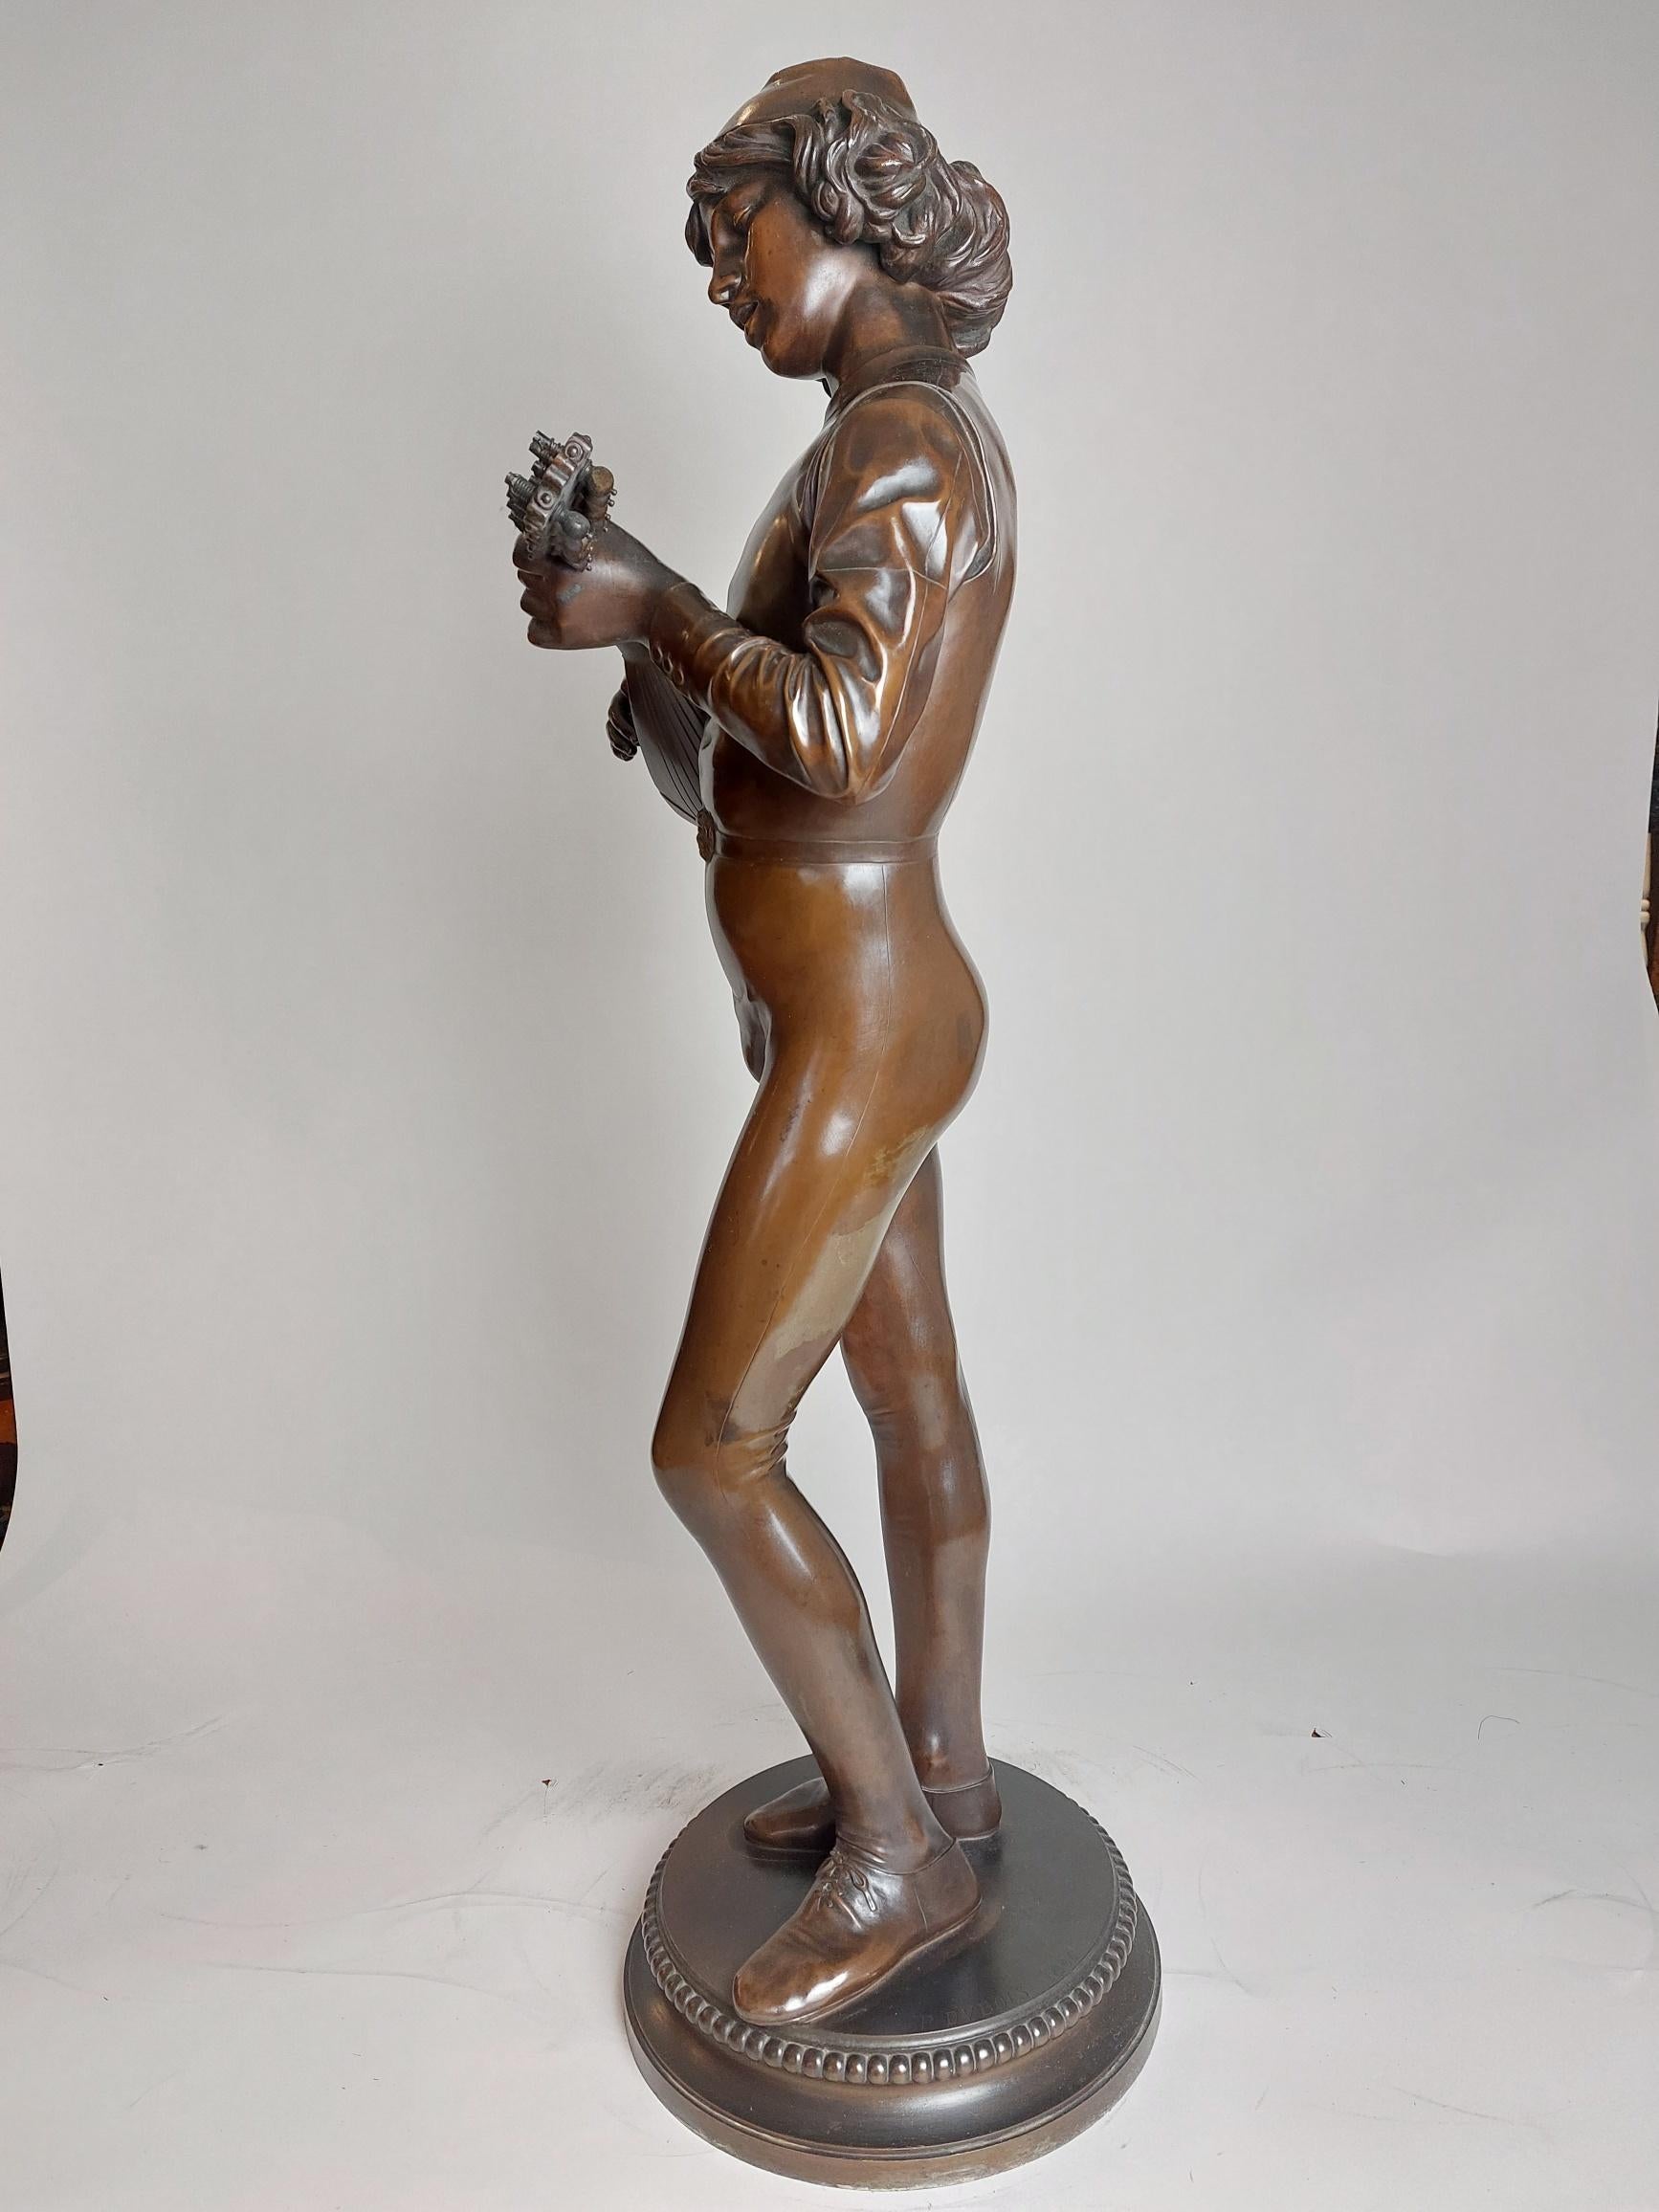 Florentiner Chanteur des XVe siècle
Eine klassische französische Bronze des 19. Jahrhunderts mit einer jungen  Troubadour, der eine Laute spielt.
Der Musiker scheint von dem Lied, das er spielt, ergriffen zu sein und beobachtet aufmerksam seine